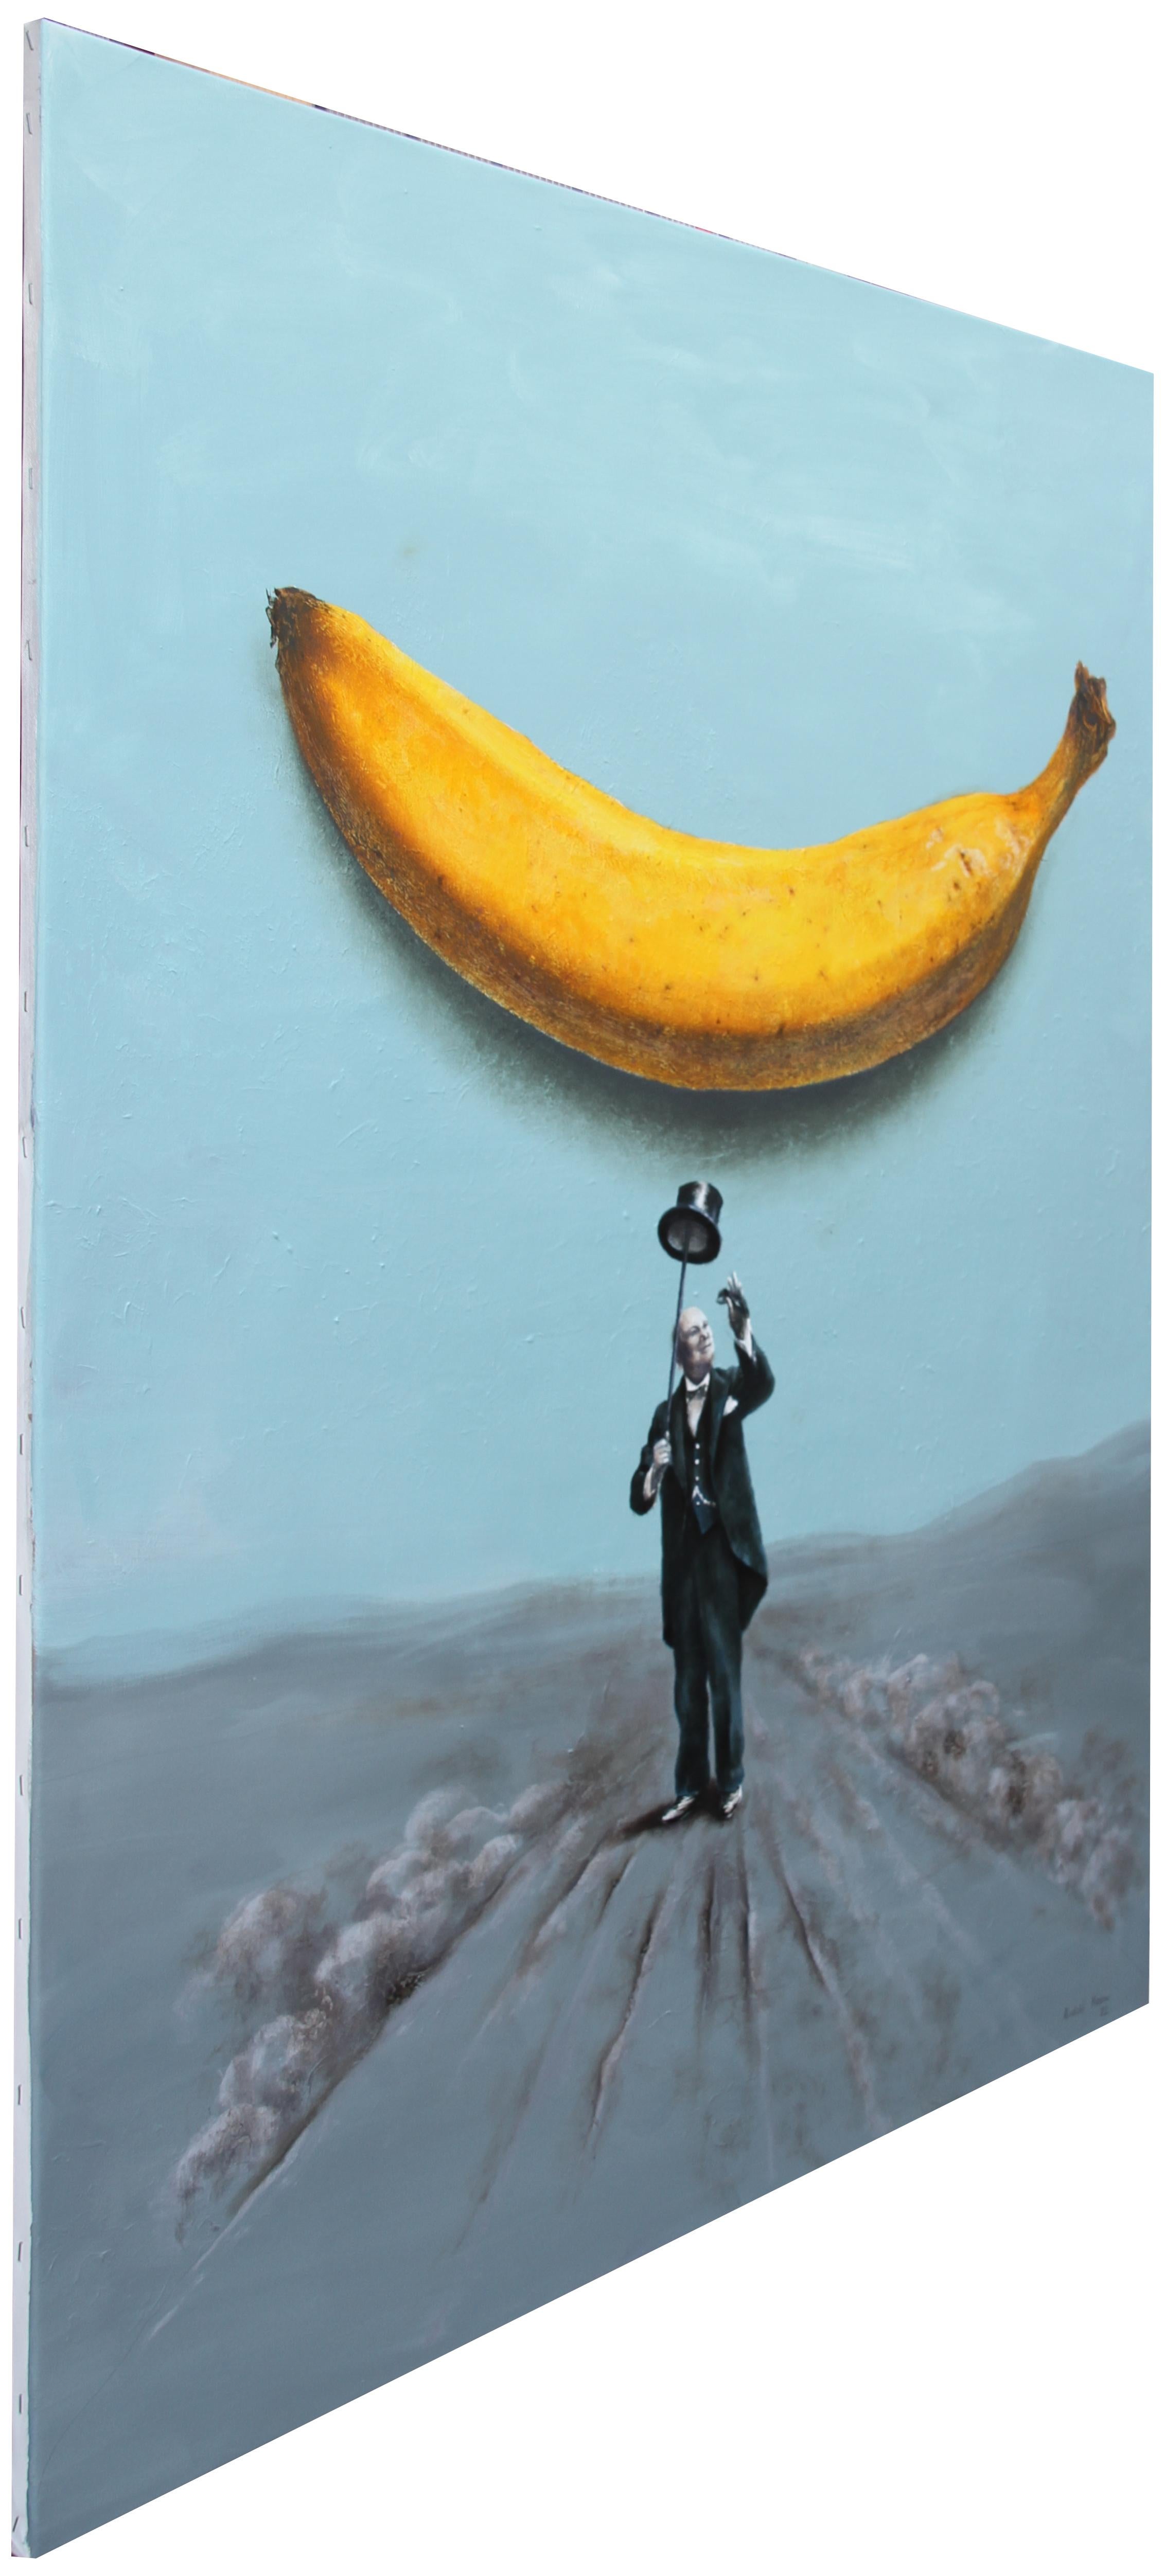 famous banana art